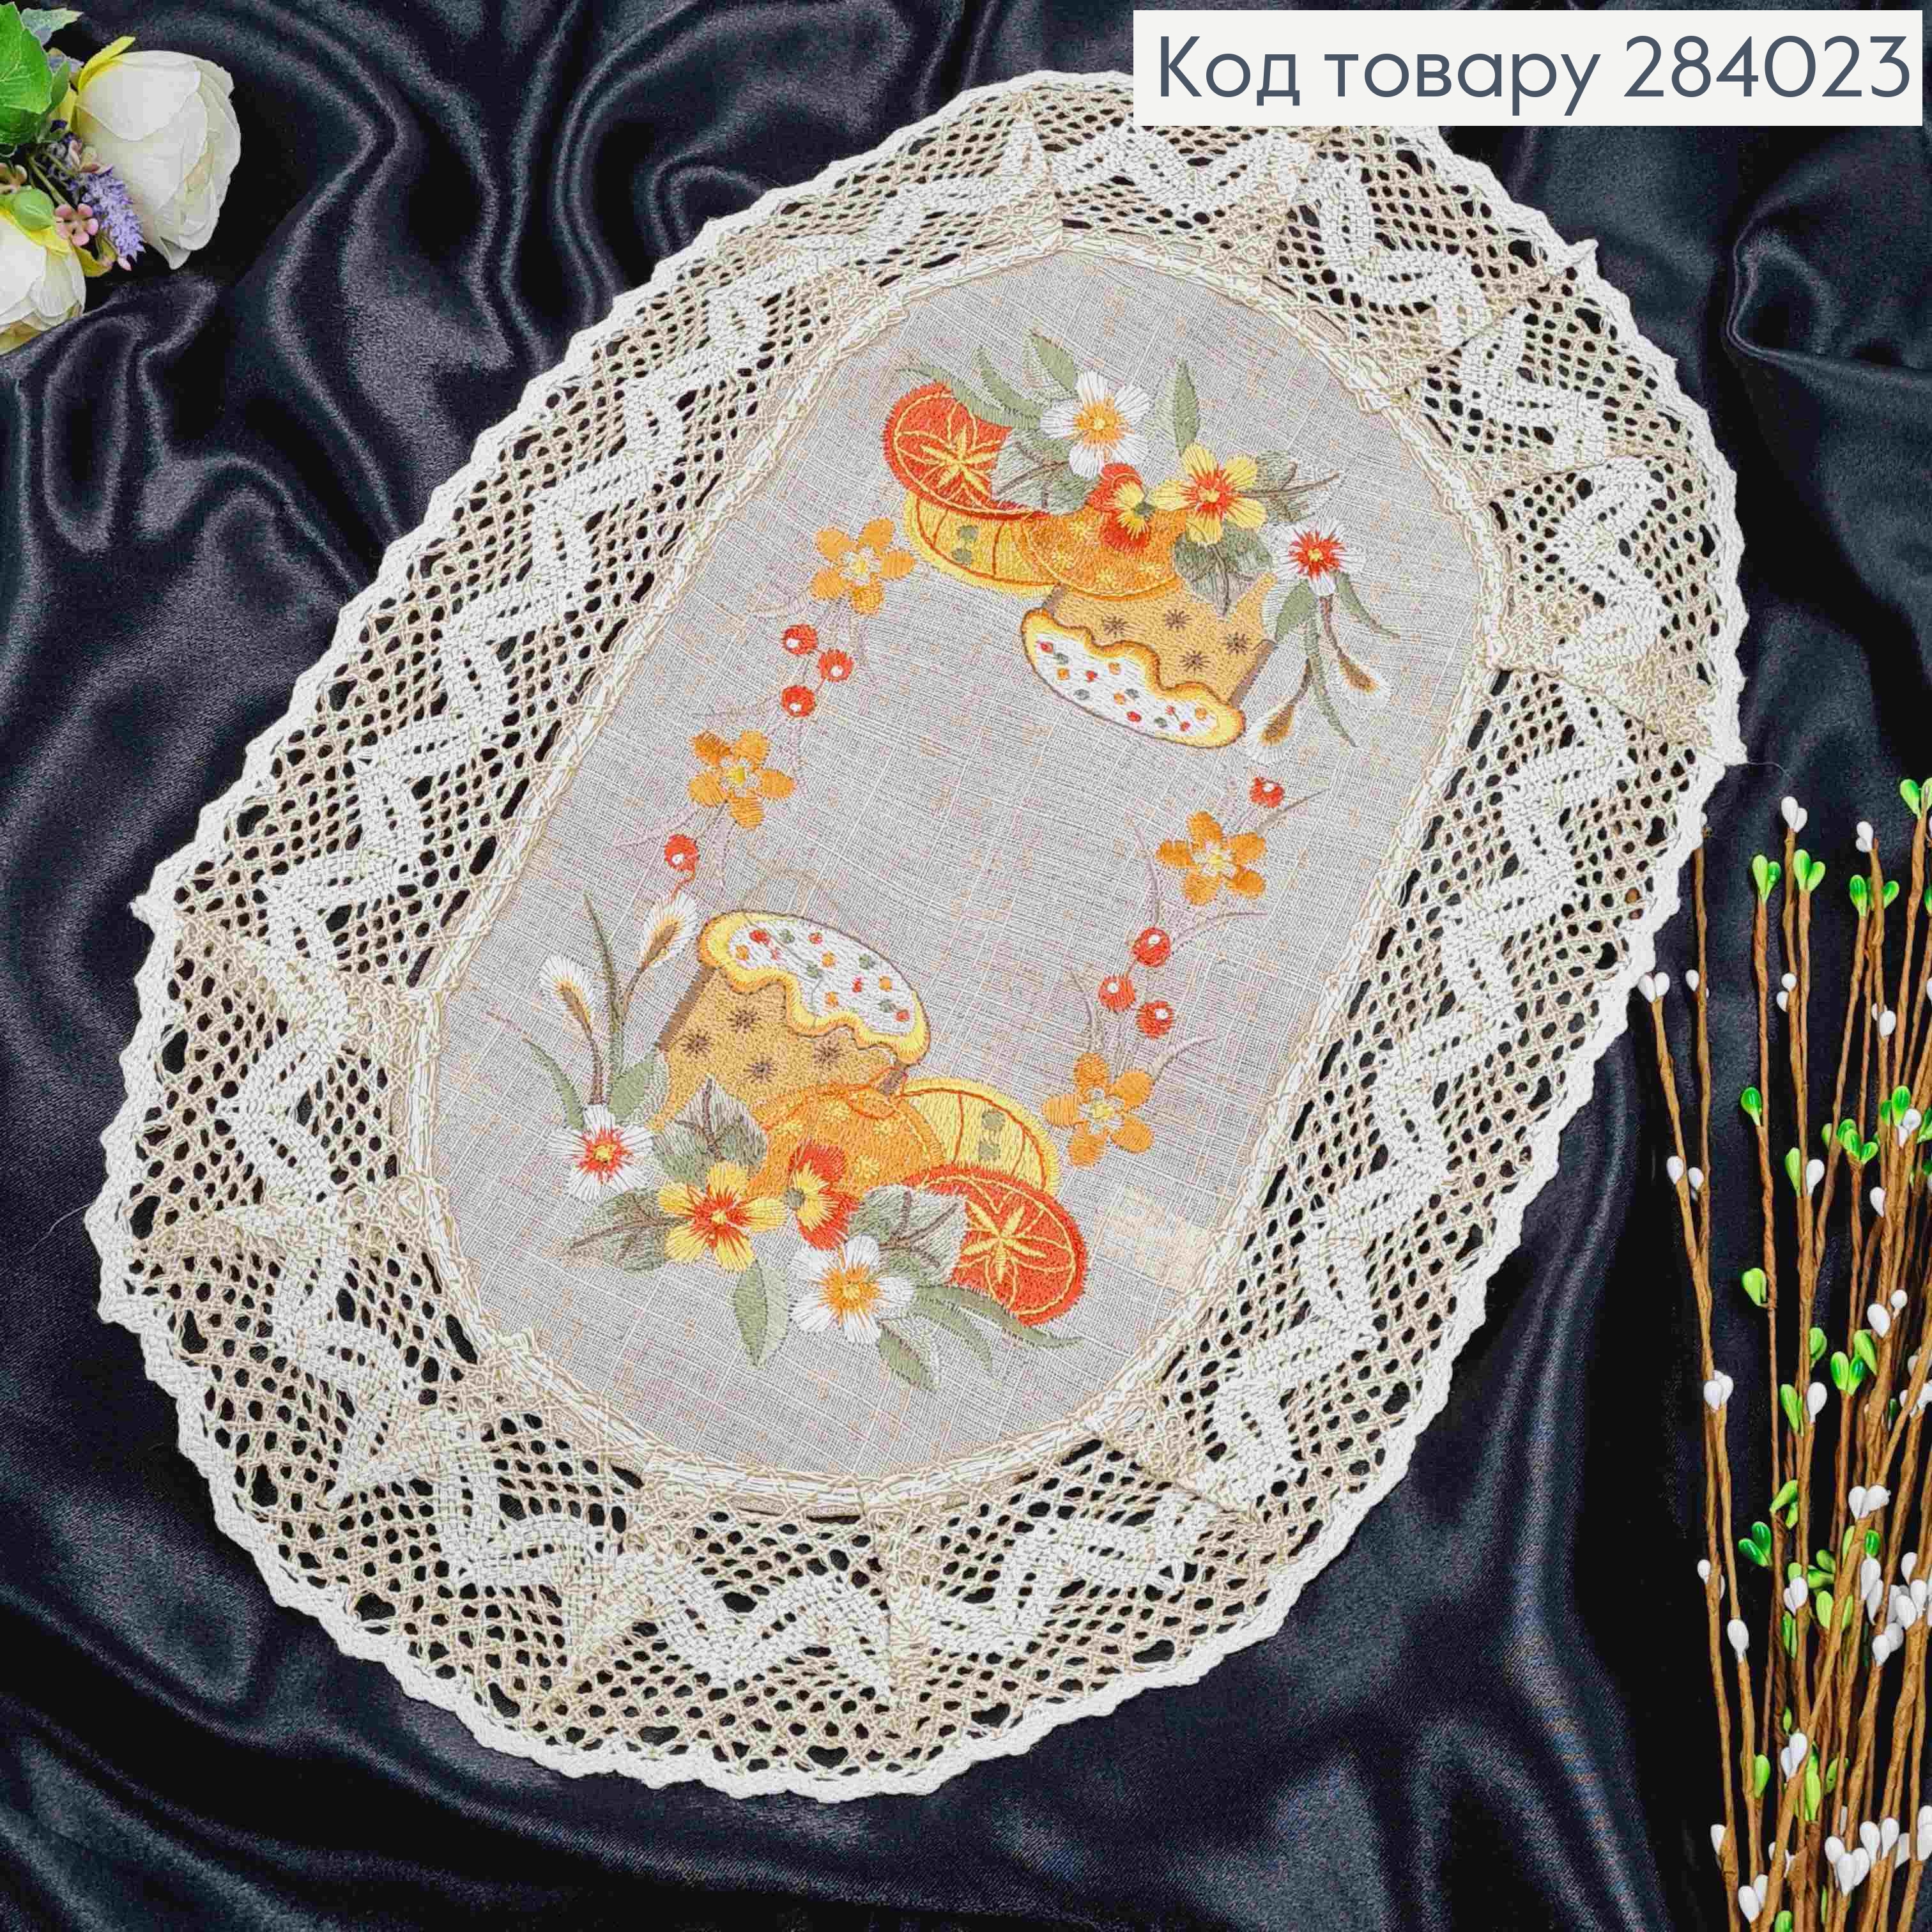 Пасхальная салфетка бежевая, с льняным кружевом и вышивкой "Цветка с пасхальными яйцами", овальная 33*48см. 284023 фото 2